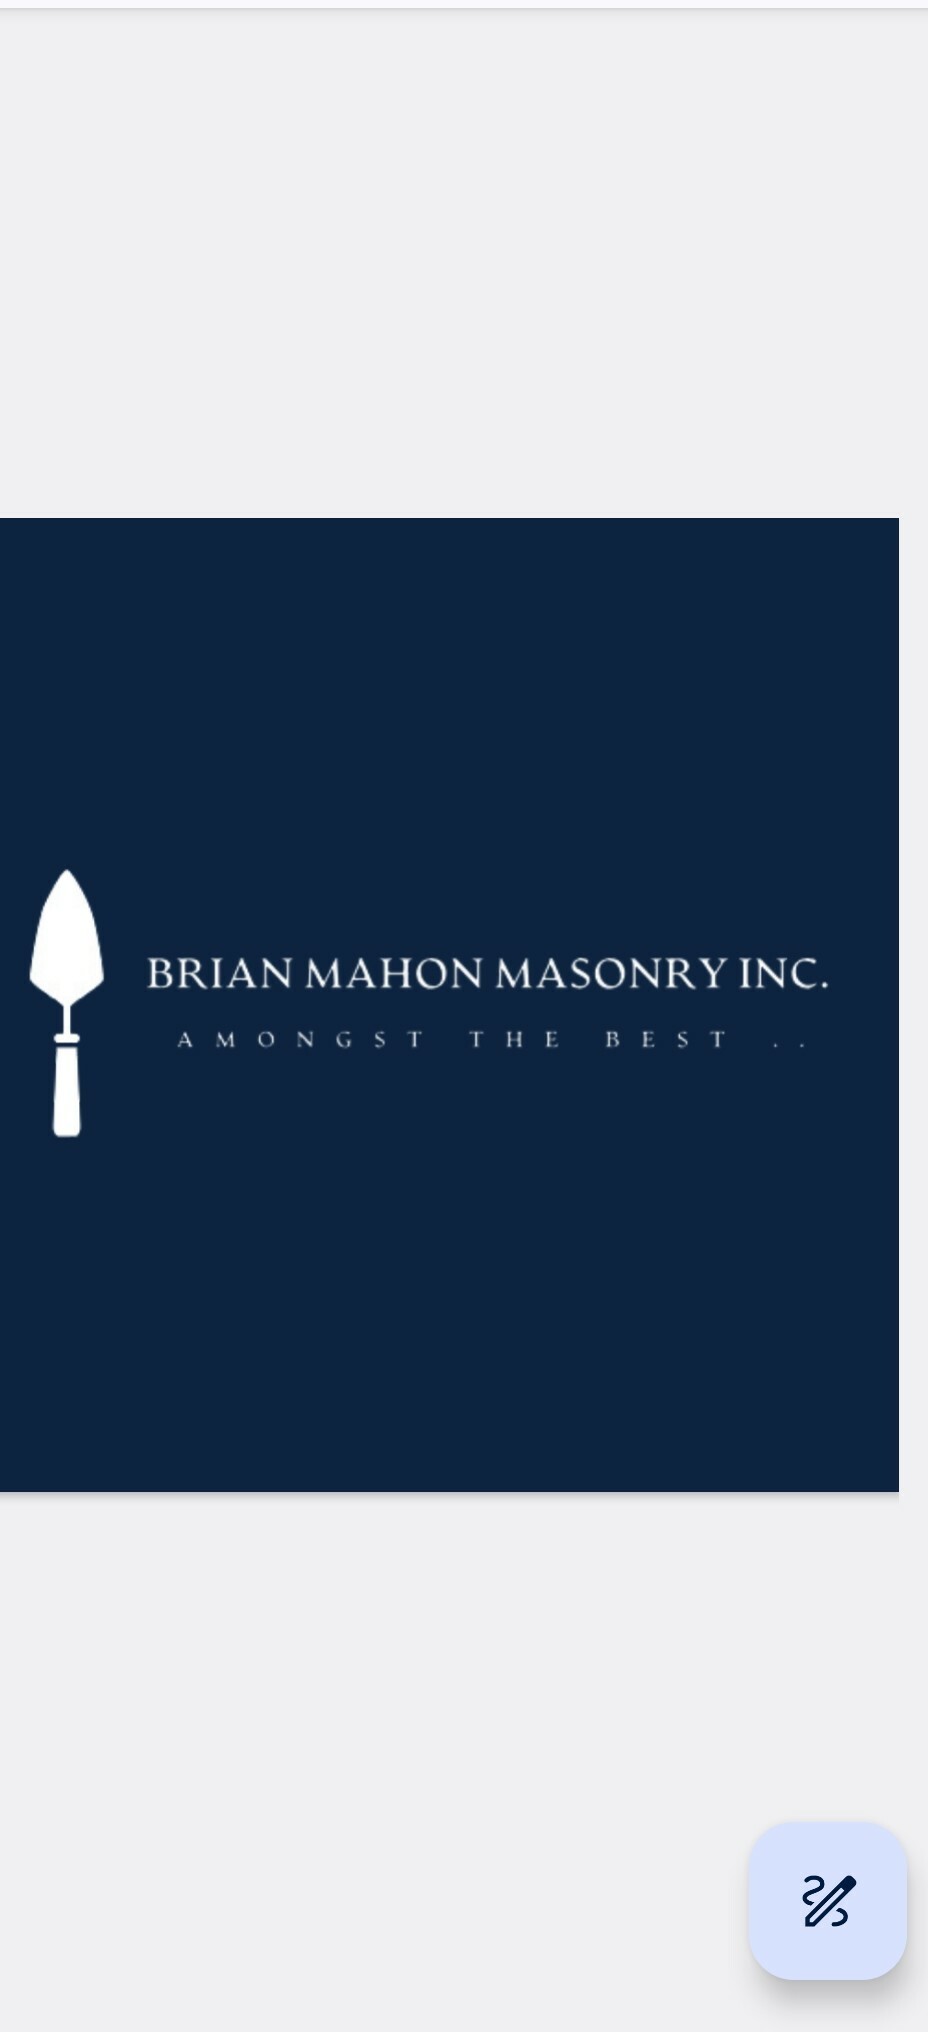 Brian Mahon Masonry's logo